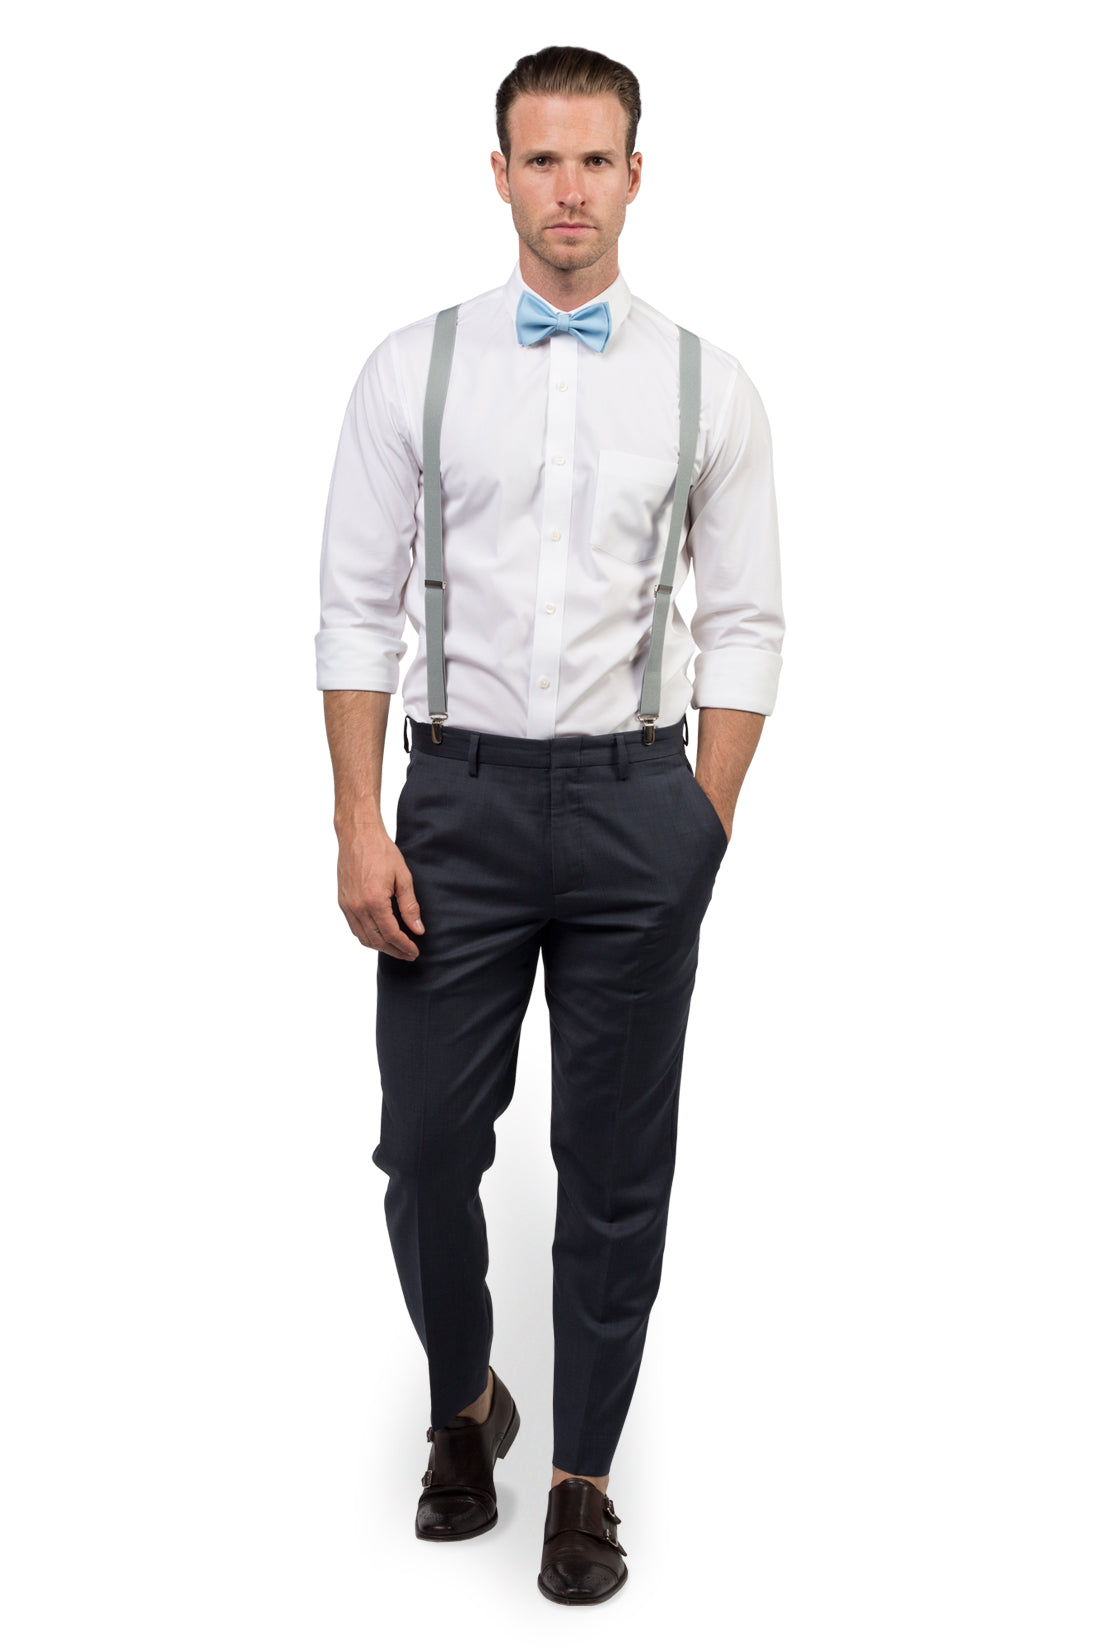 Buy Light Grey Suspenders Yback Tie Suspenders Clip Suspenders Bow Tie and  Suspenders for Men at Amazonin